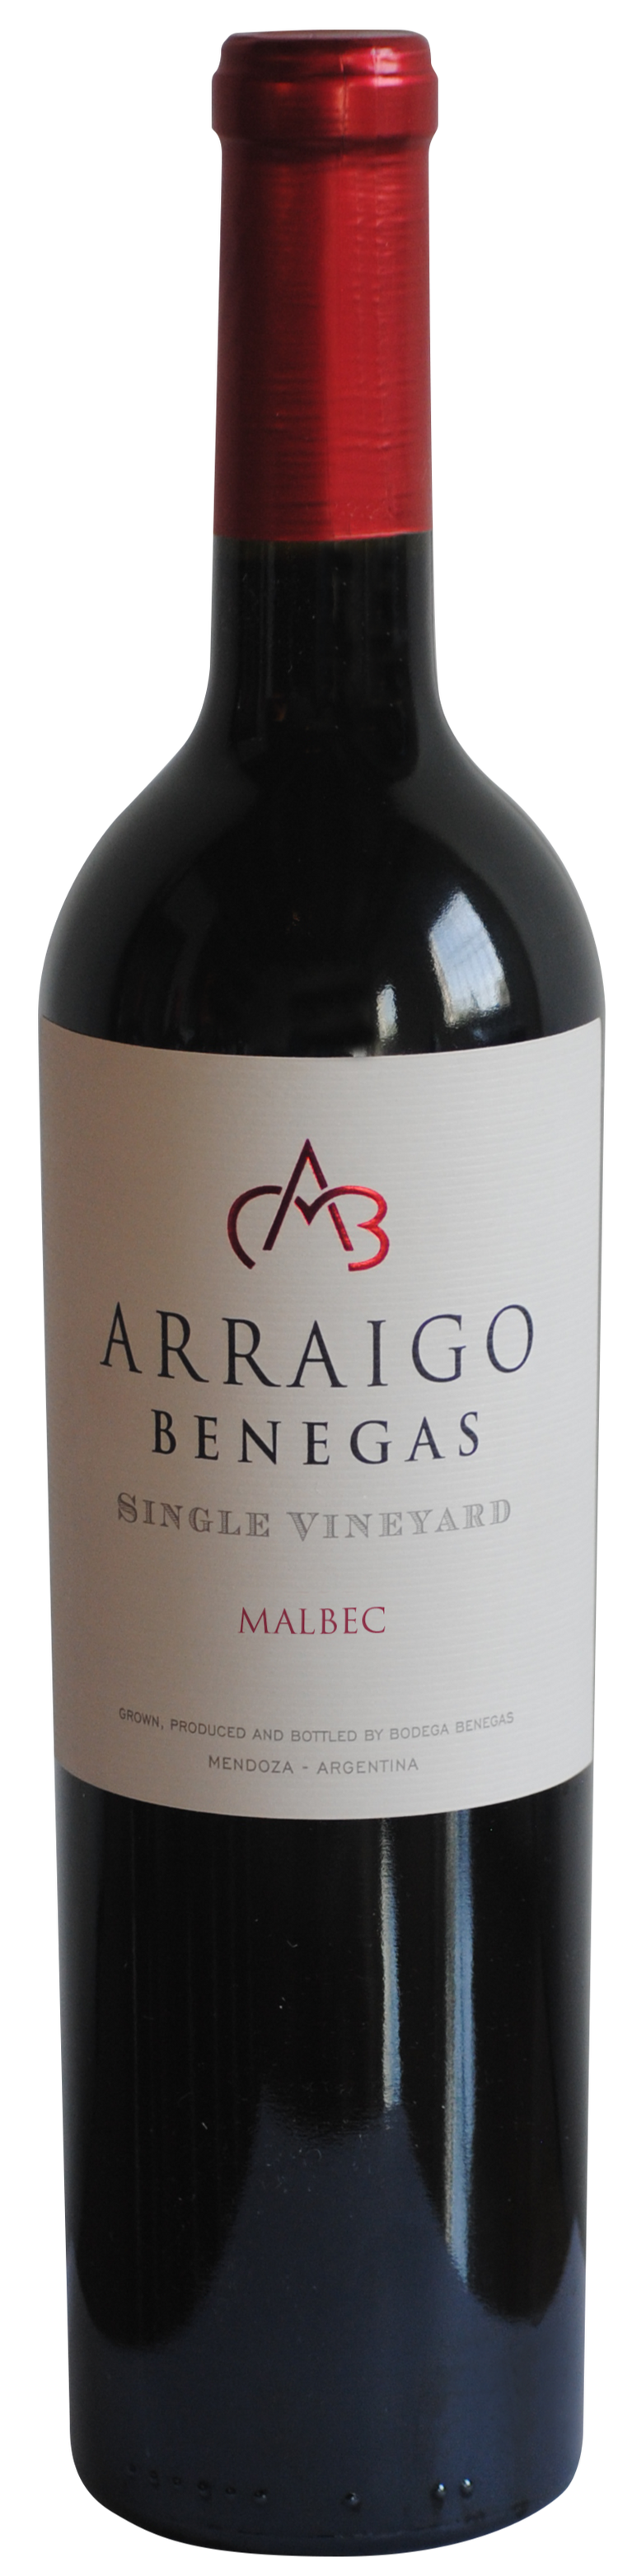 Arraigo Benegas Single Vineyard Malbec 2018